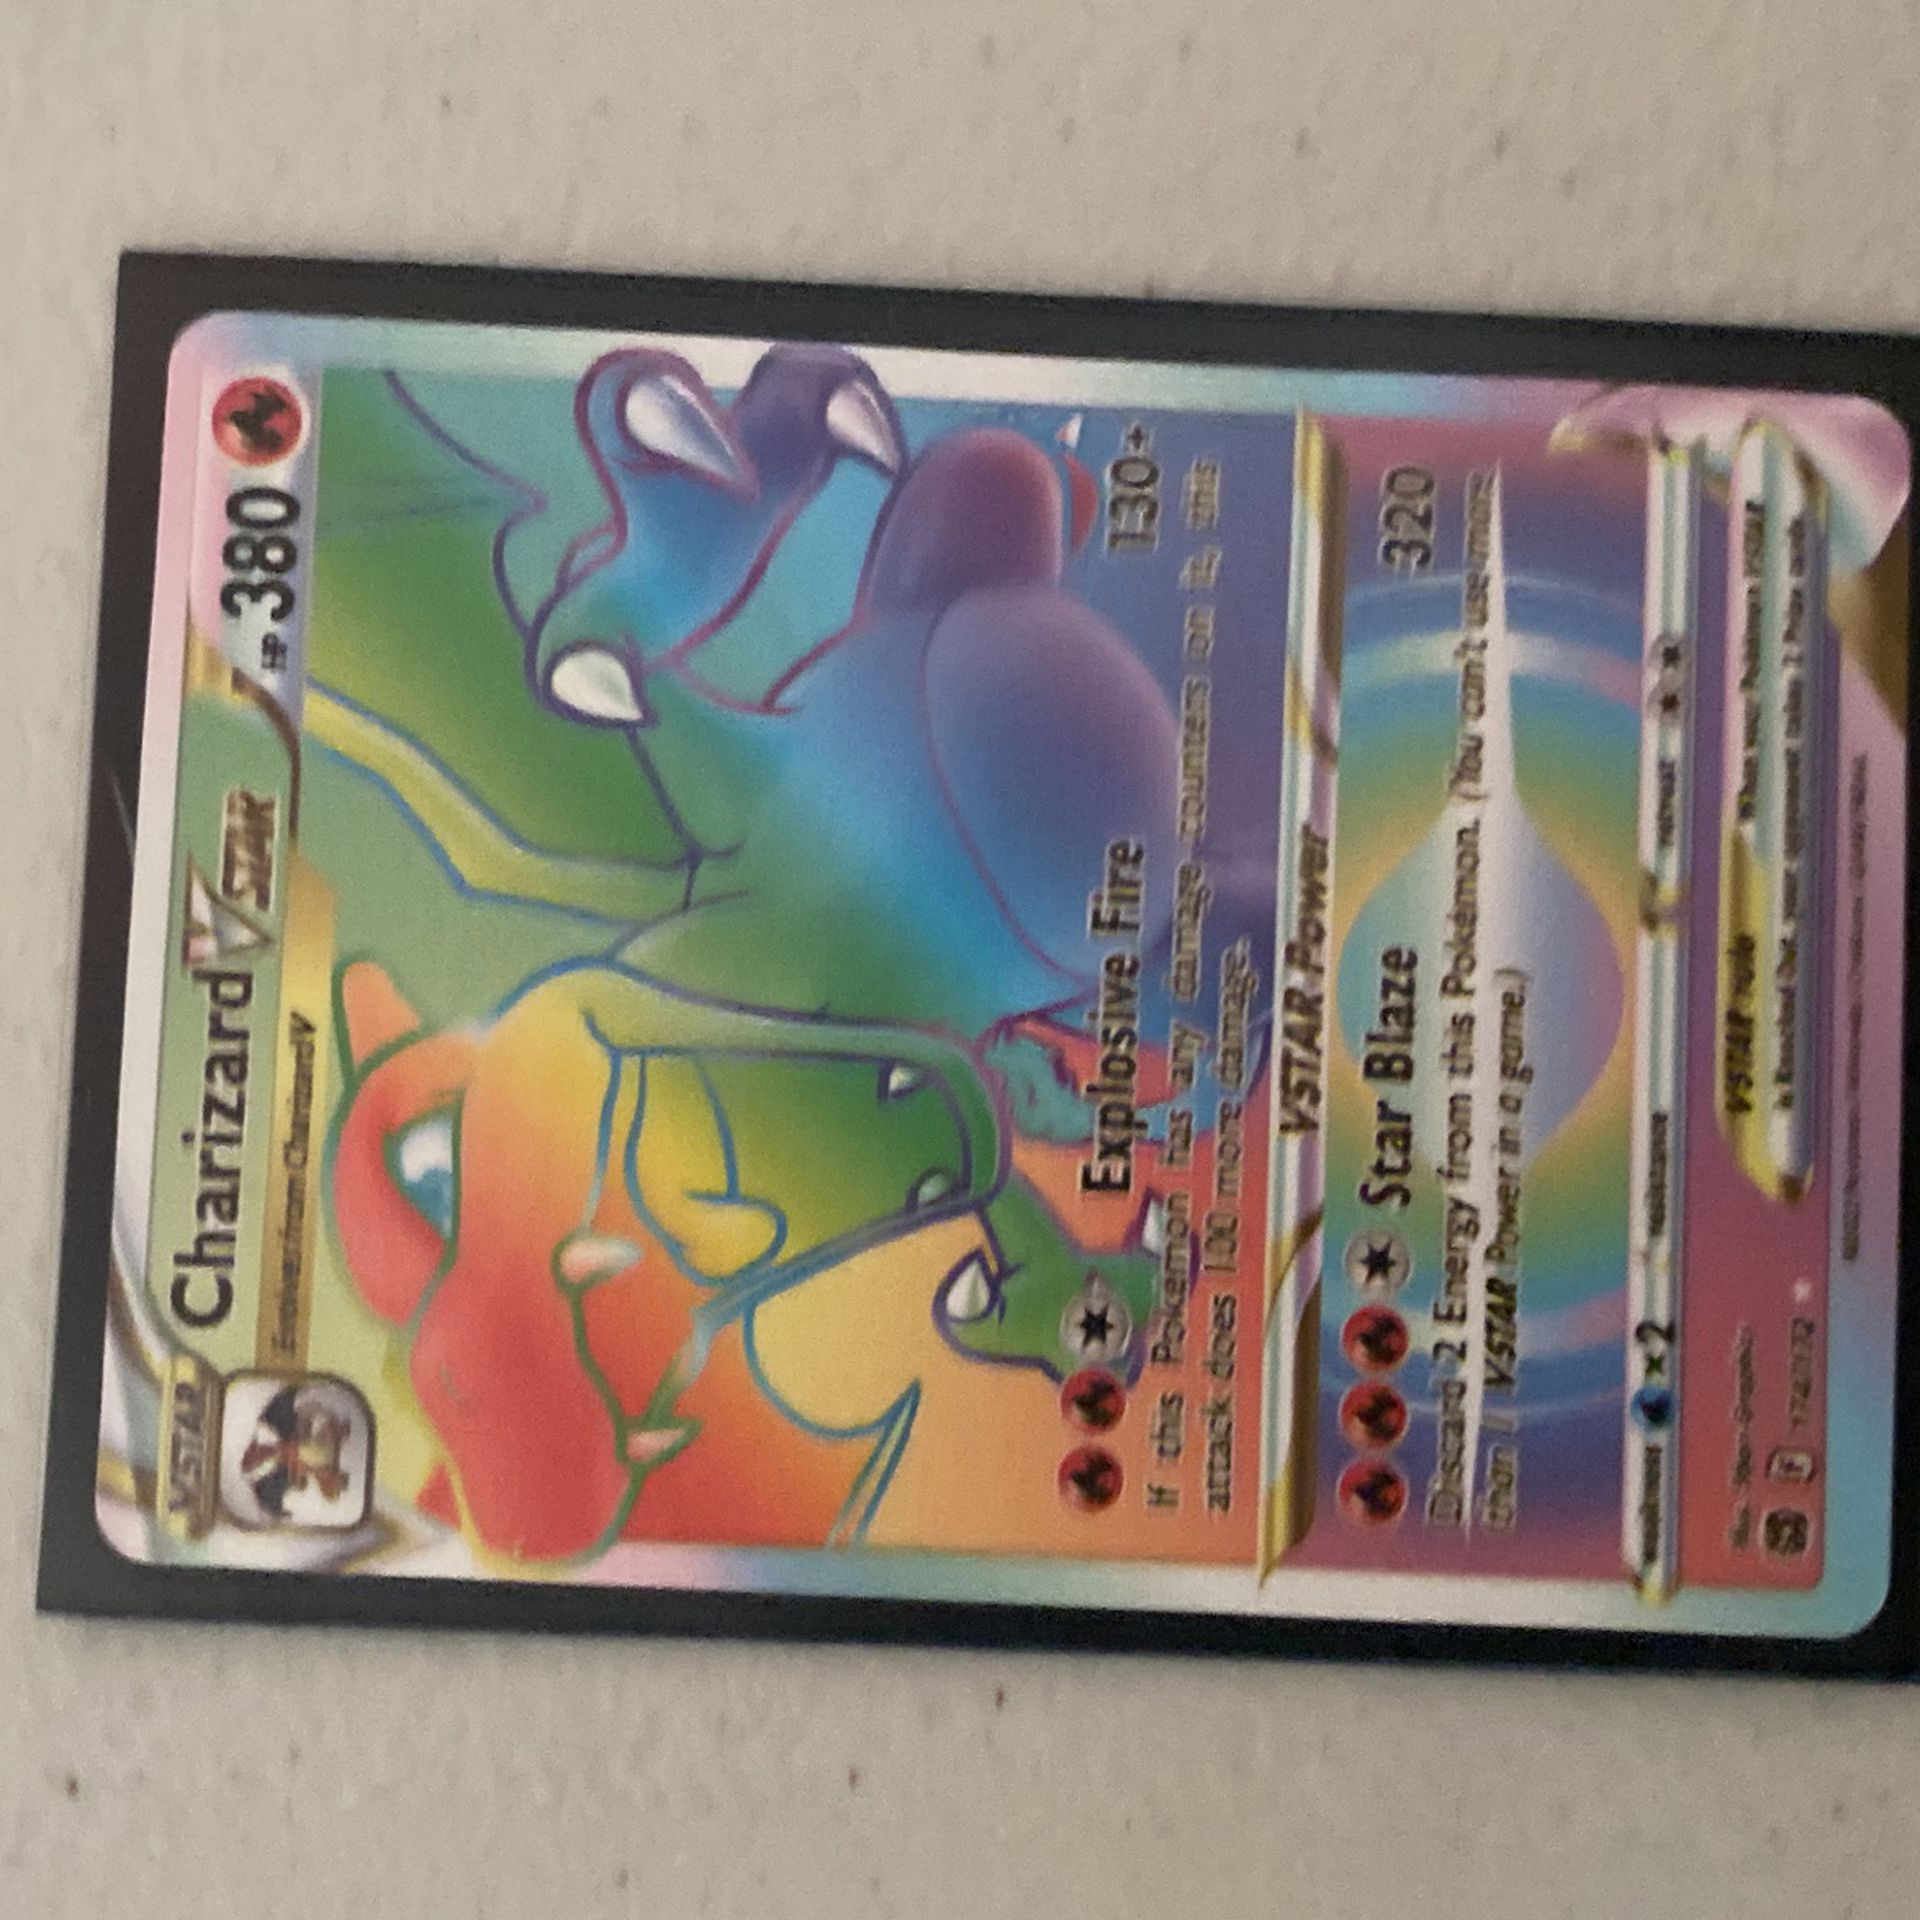  Very Close Real Pokémon Cards 